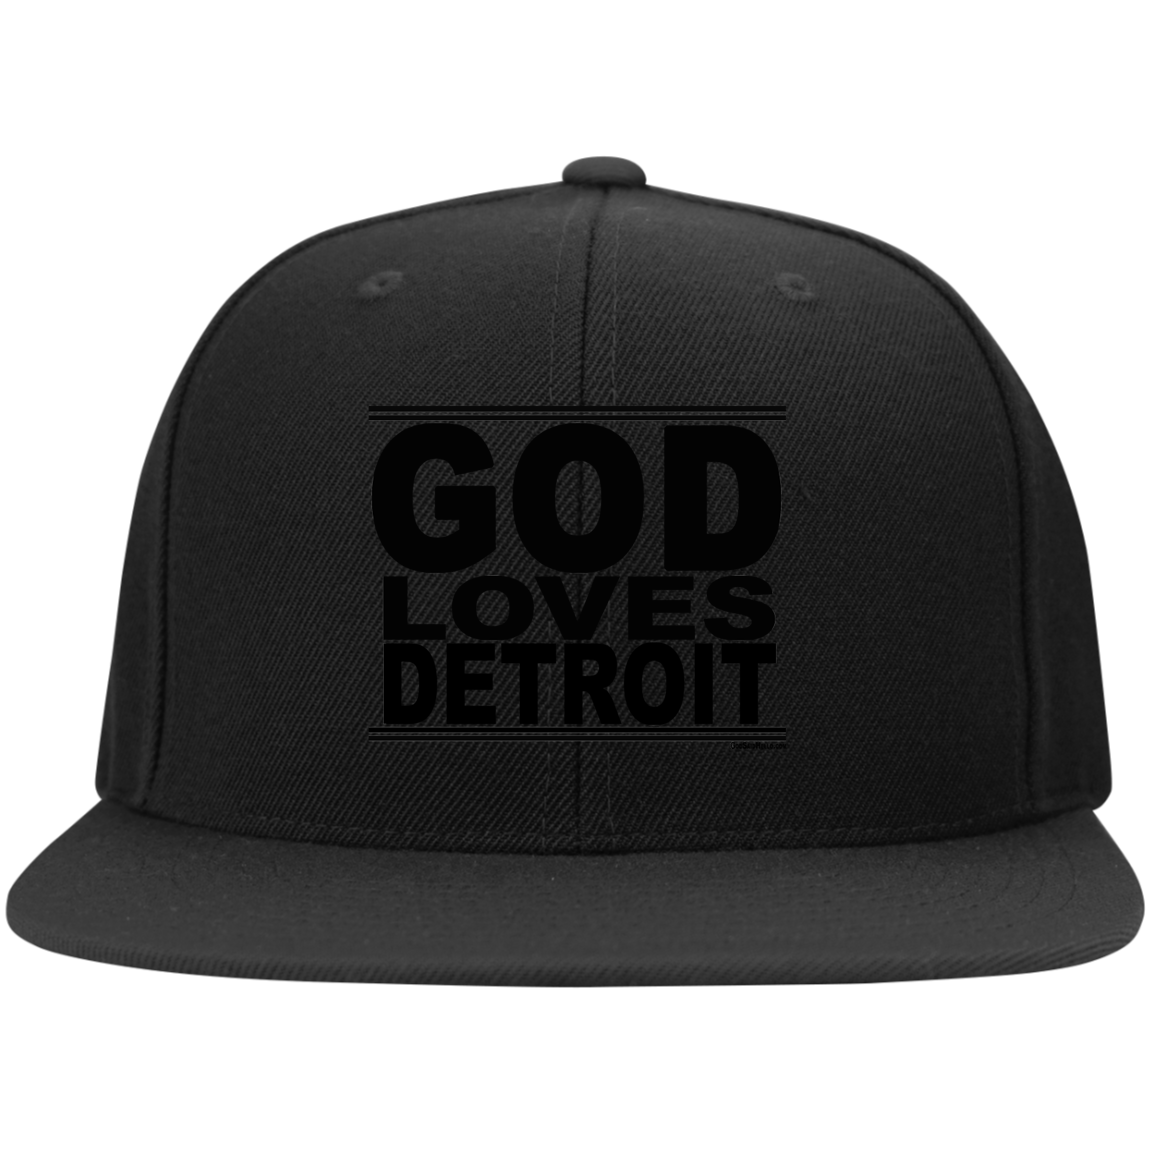 #GodLovesDetroit - Snapback Hat